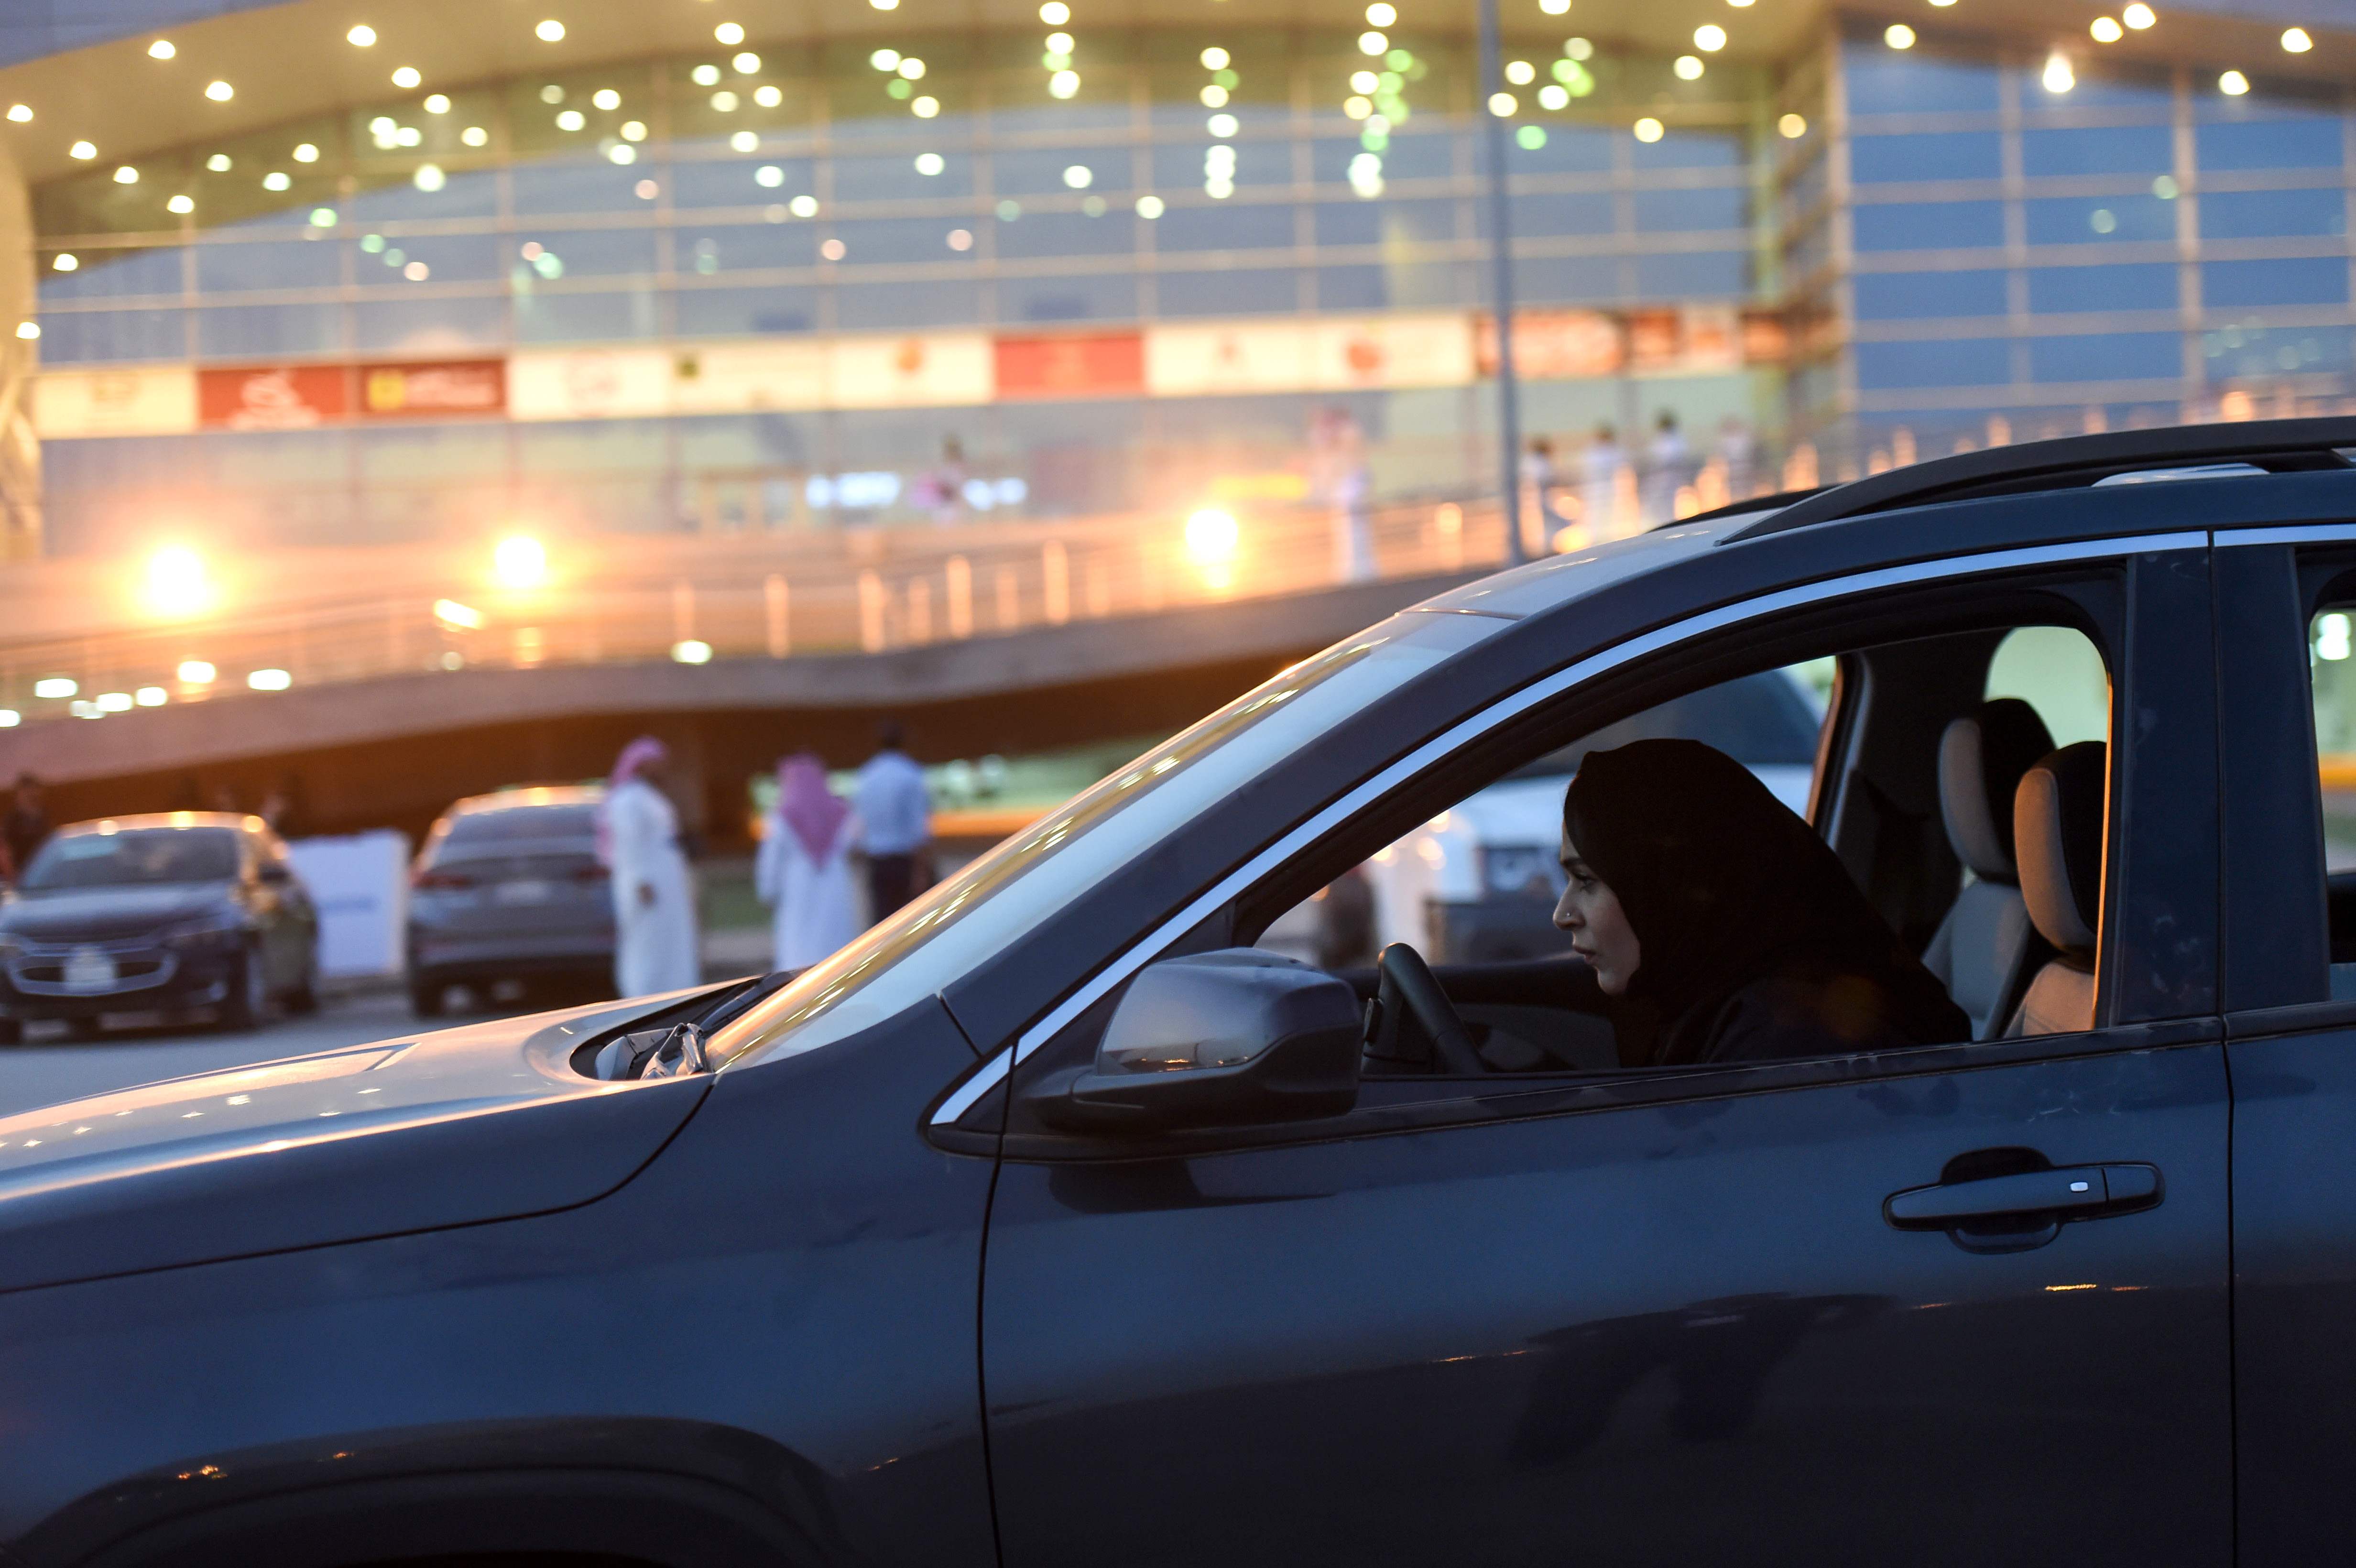 سيدة سعودية تجرب سيارة داخل معرض للسيارات